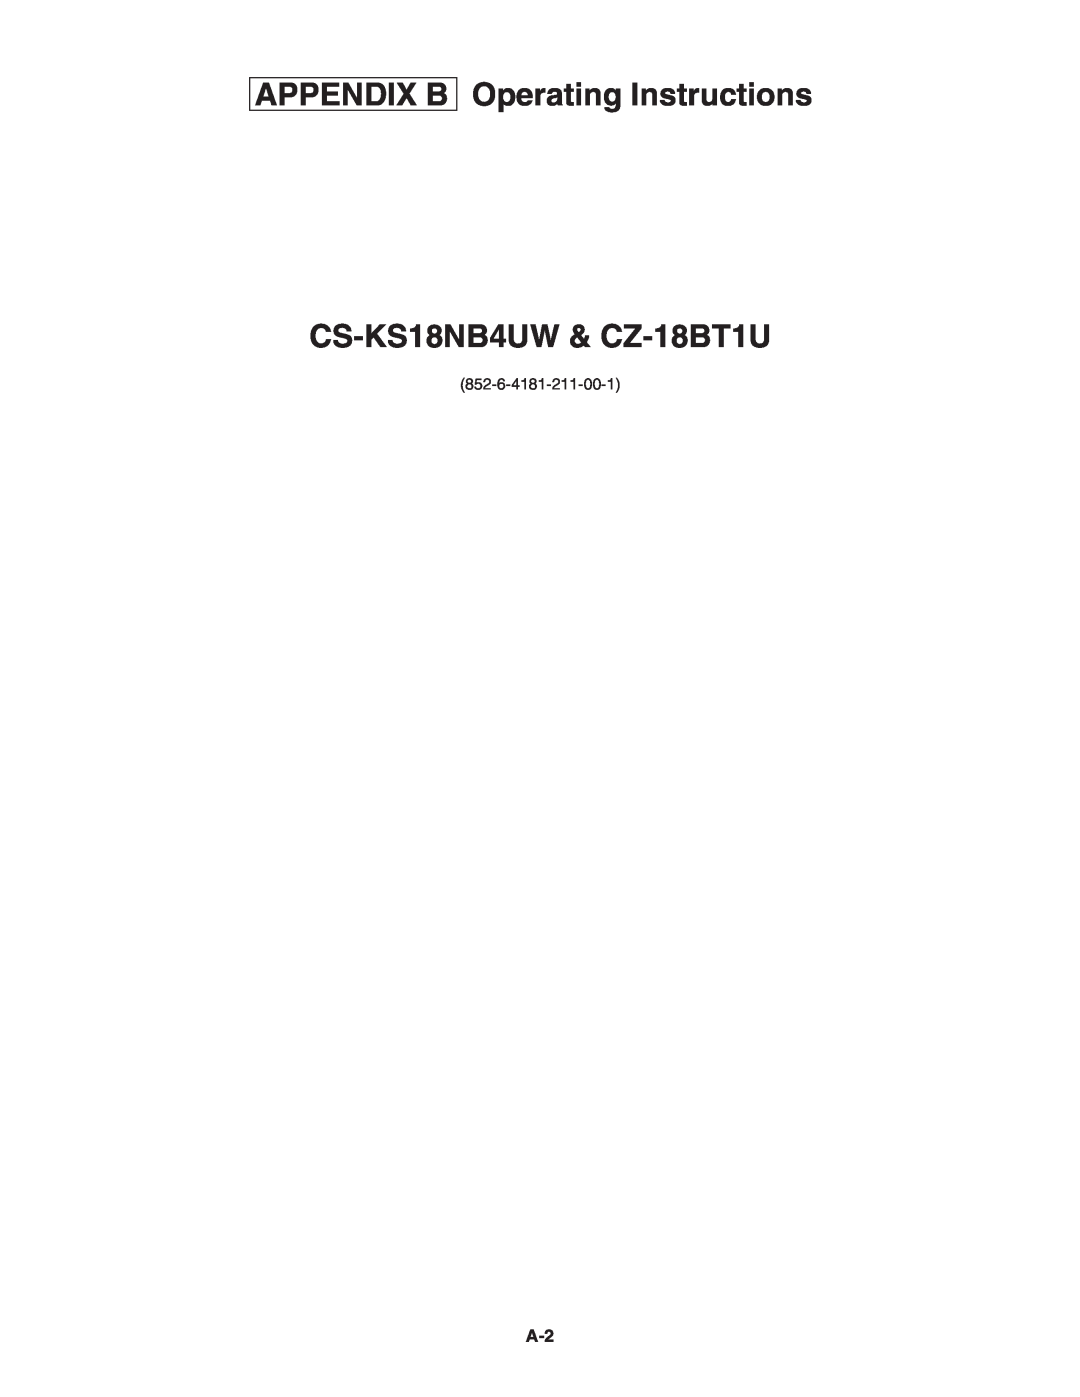 Panasonic R410A service manual Appendix B, CS-KS18NB4UW& CZ-18BT1U, Operating Instructions 